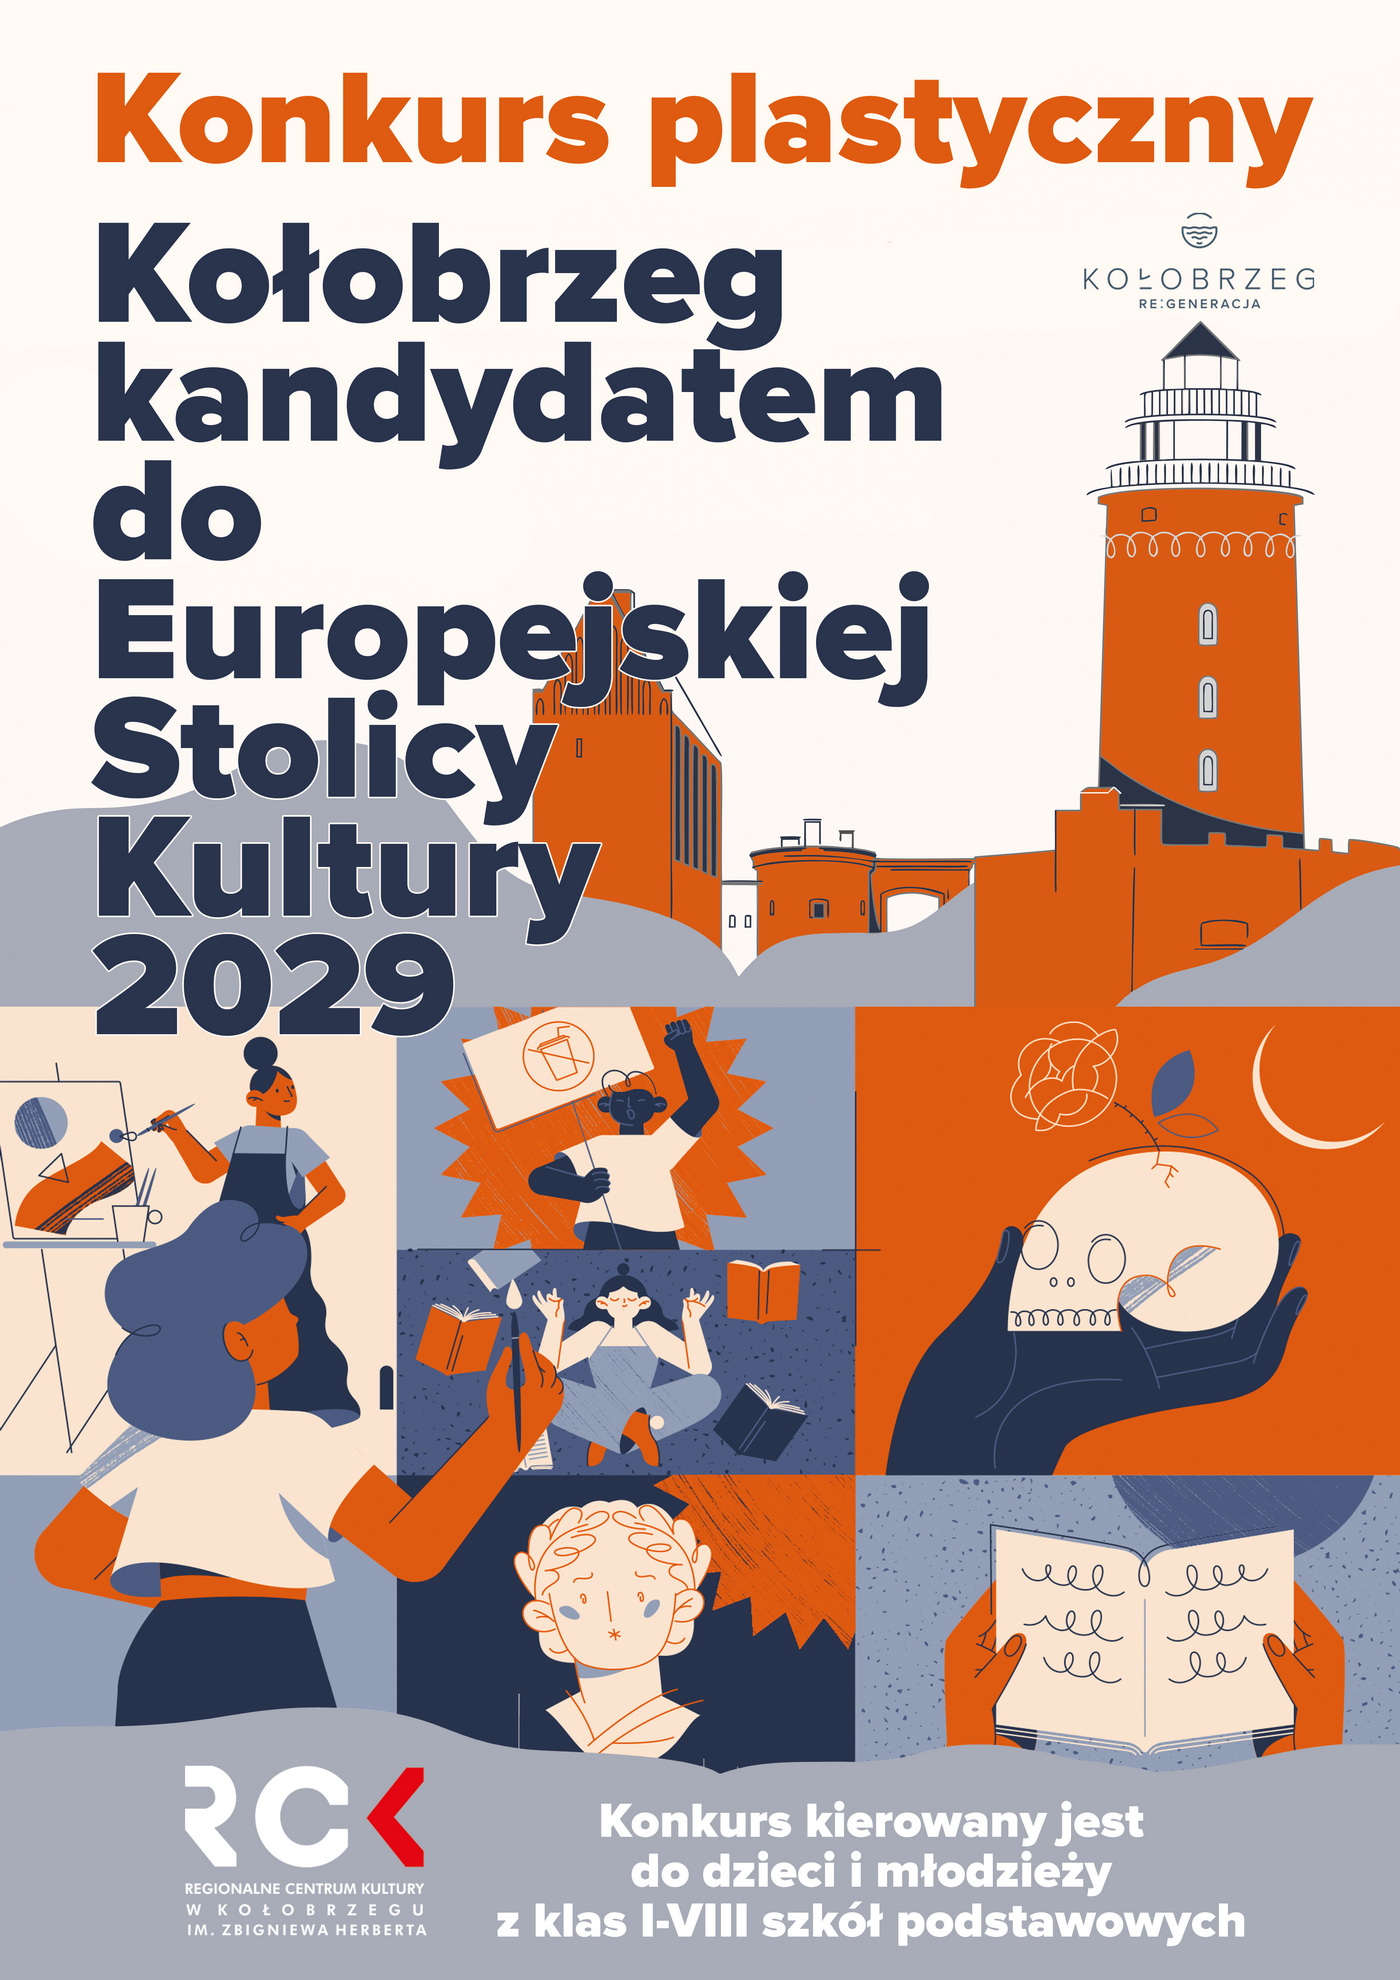 Konkurs plastyczny "Kołobrzeg kandydatem do Europejskiej Stolicy Kultury 2029"